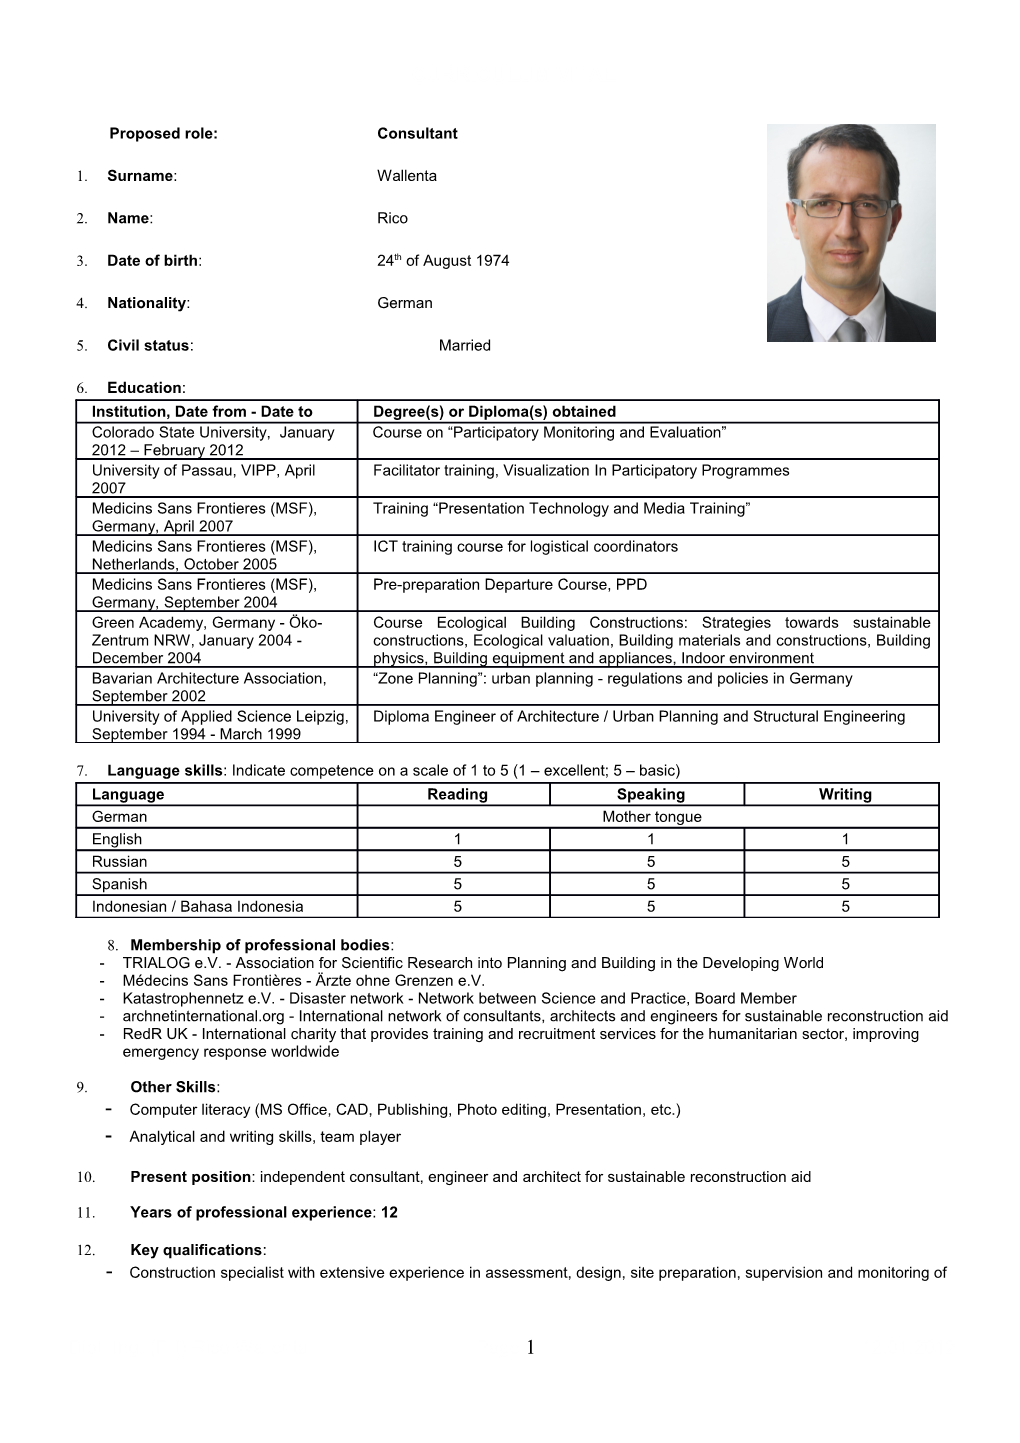 CV of Mr. Rico Wallenta